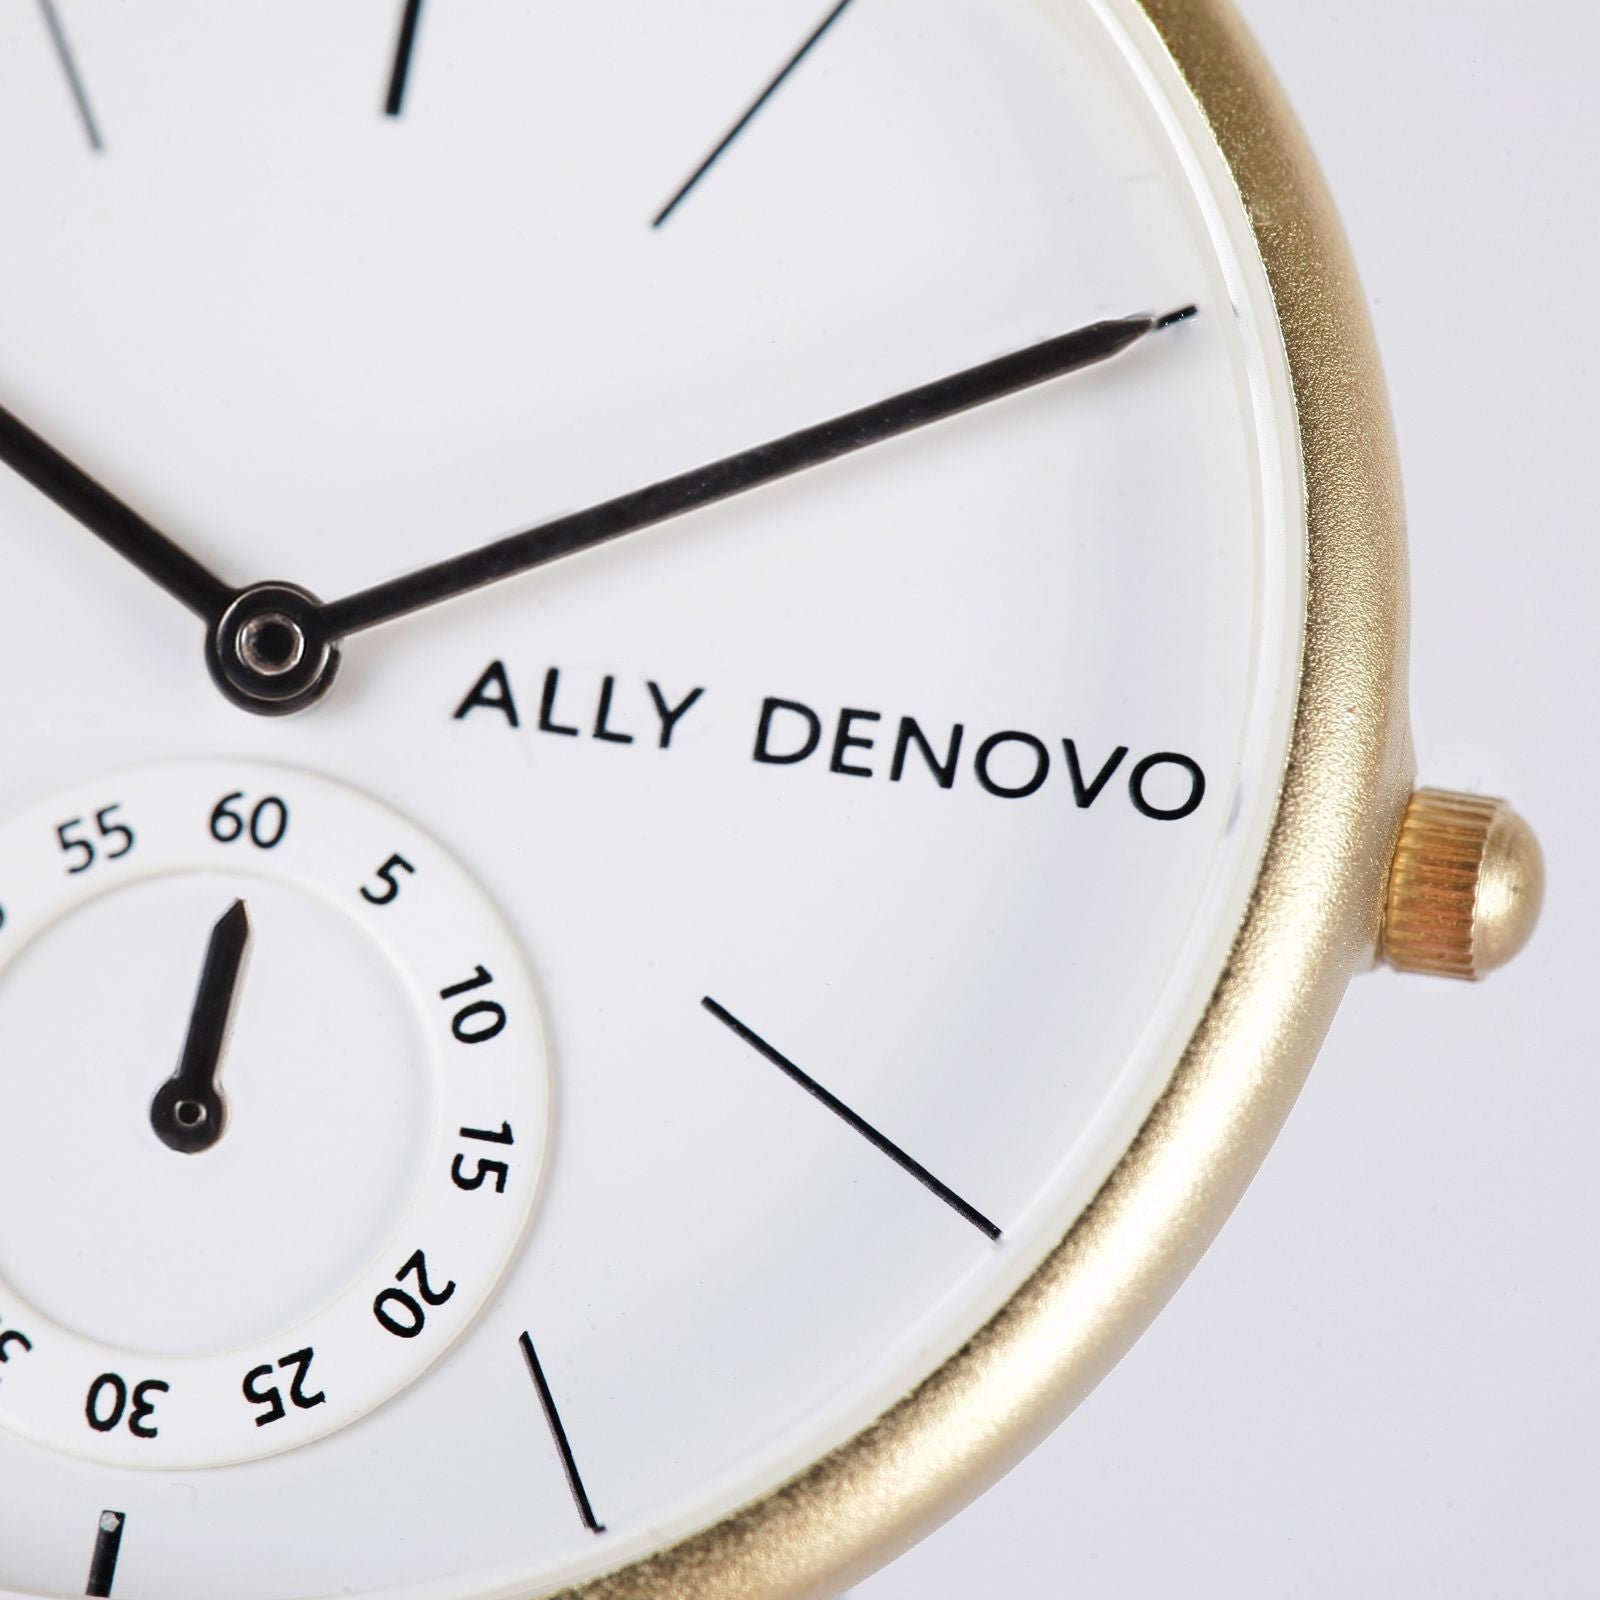 【女款36mm】全時經典腕錶－金框紅棕色真皮錶帶 AF5001.4